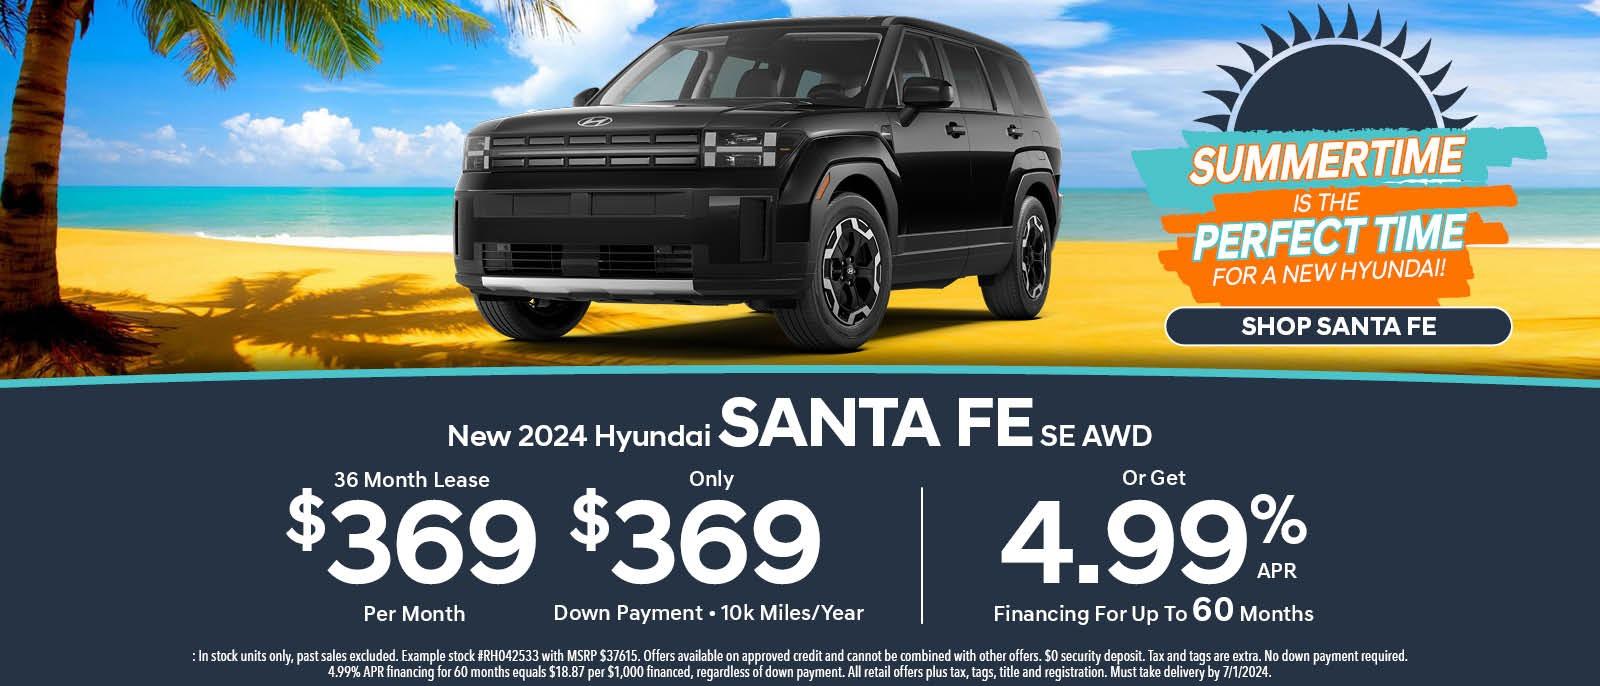 New 2024 Hyundai Santa Fe SE AWD